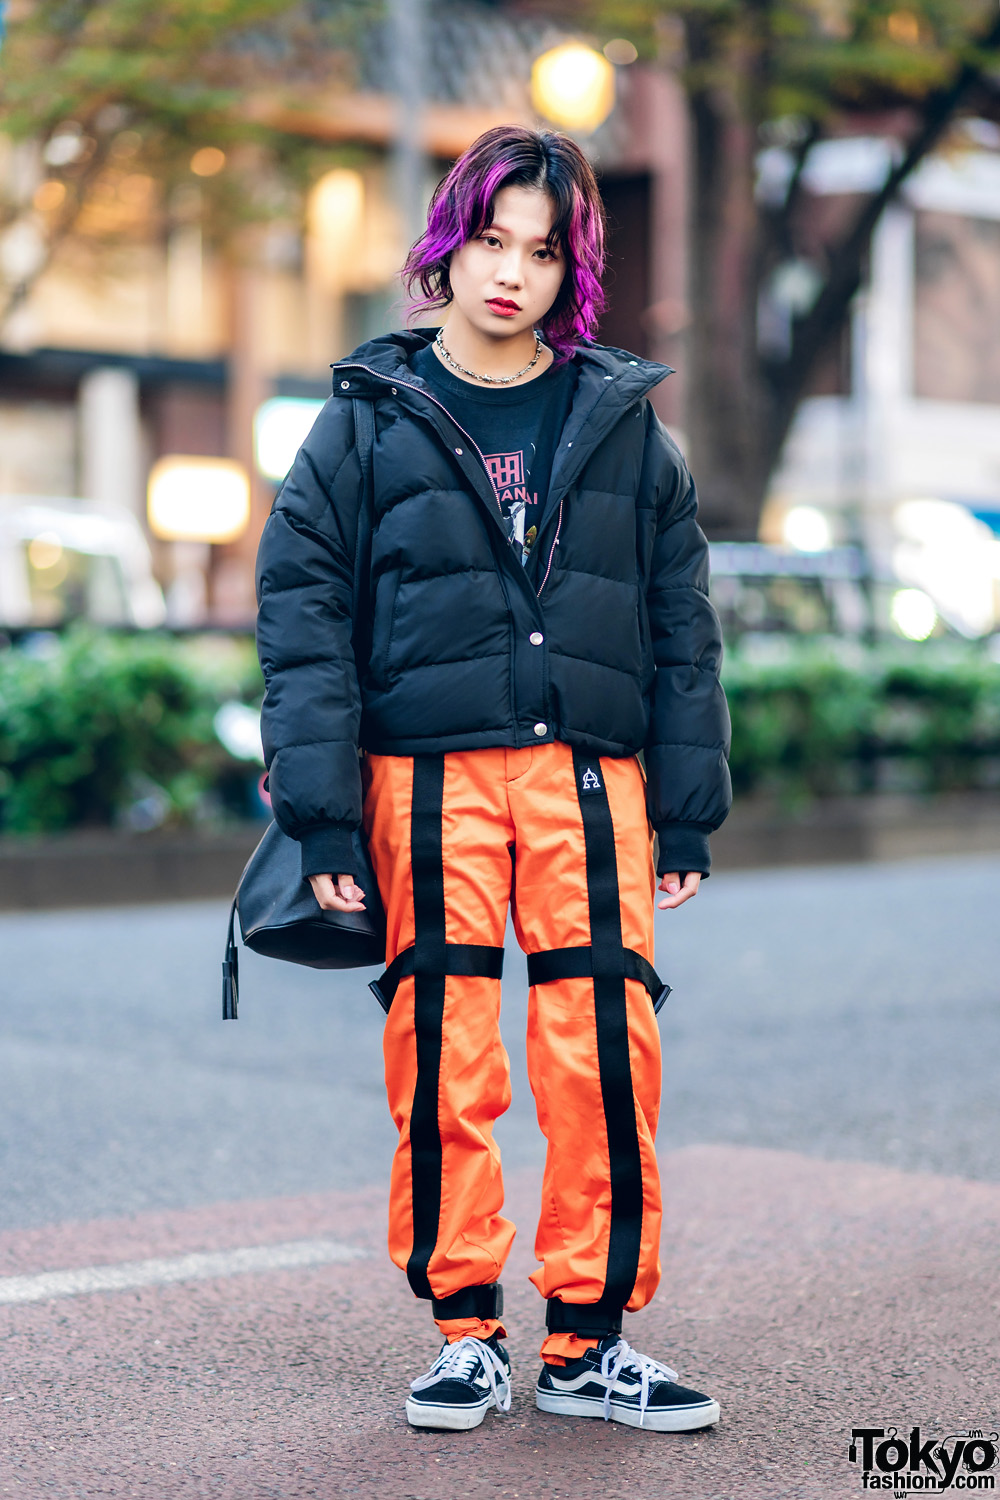 Tokyo Winter Street Style w/ Purple Hair, Jouetie Puffer Jacket, Orange ...